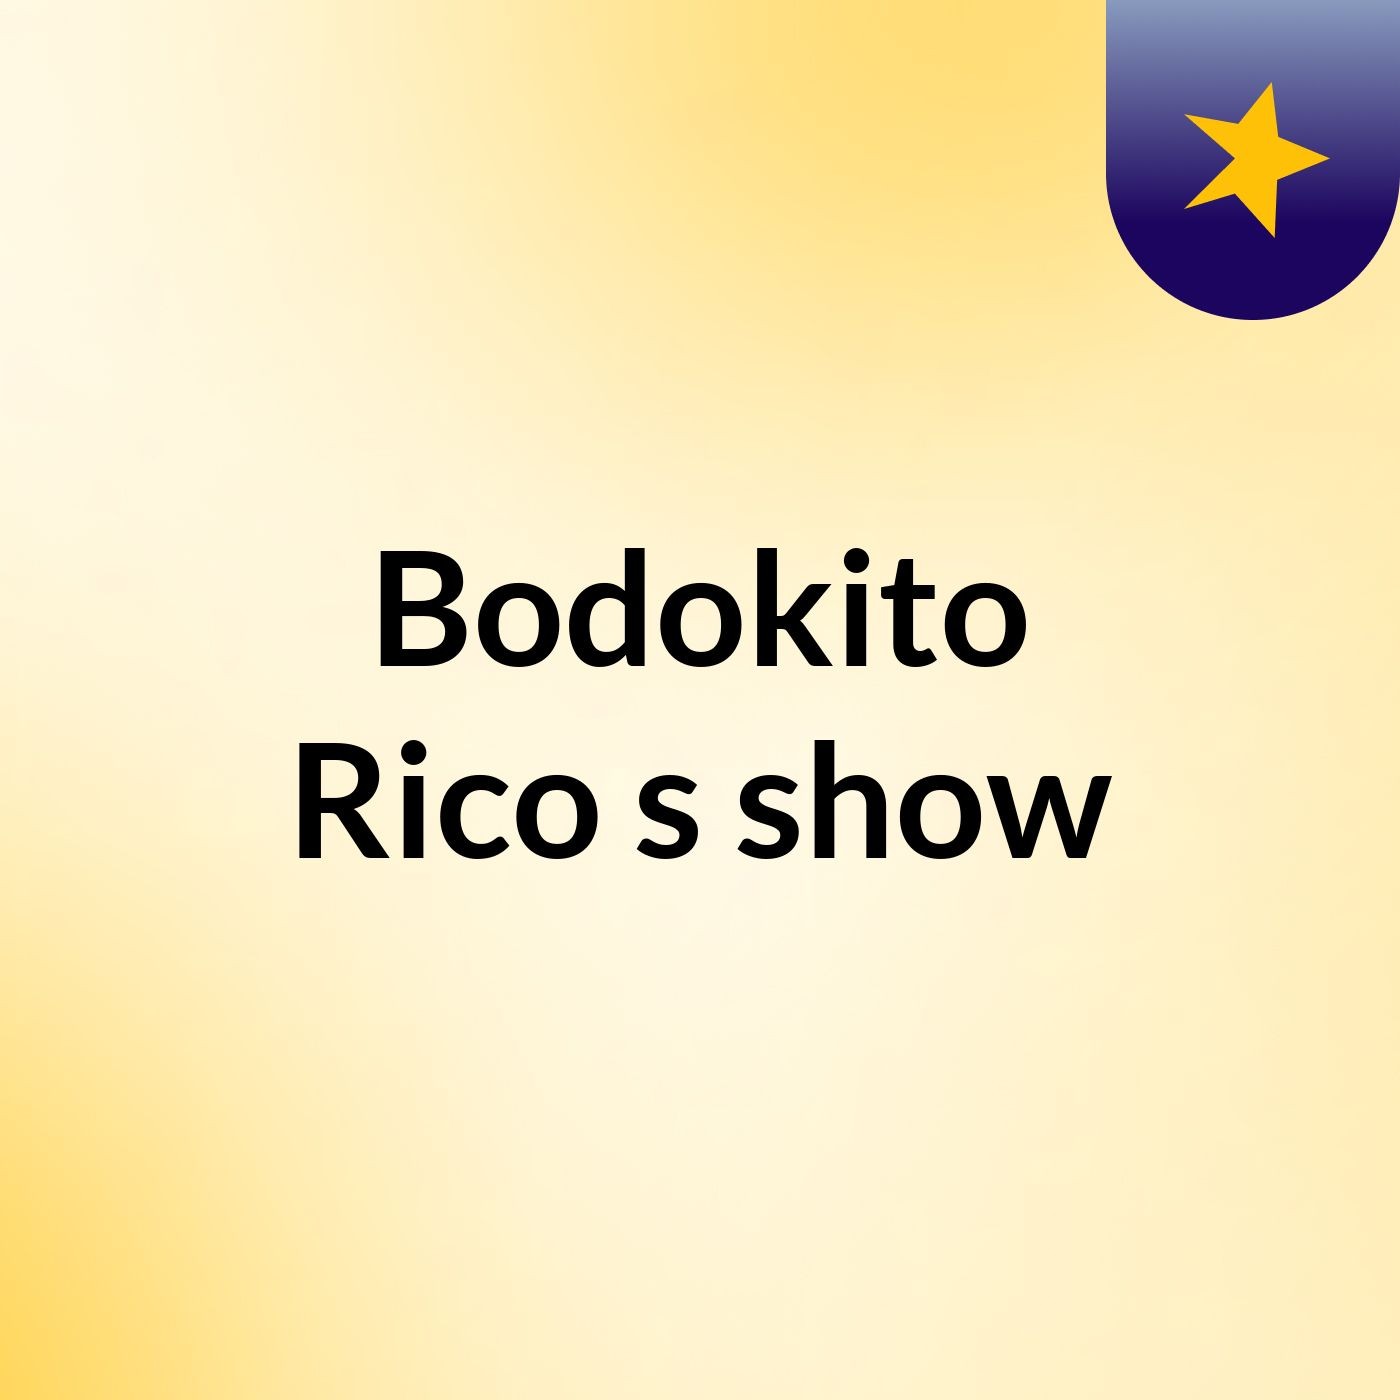 Bodokito Rico's show